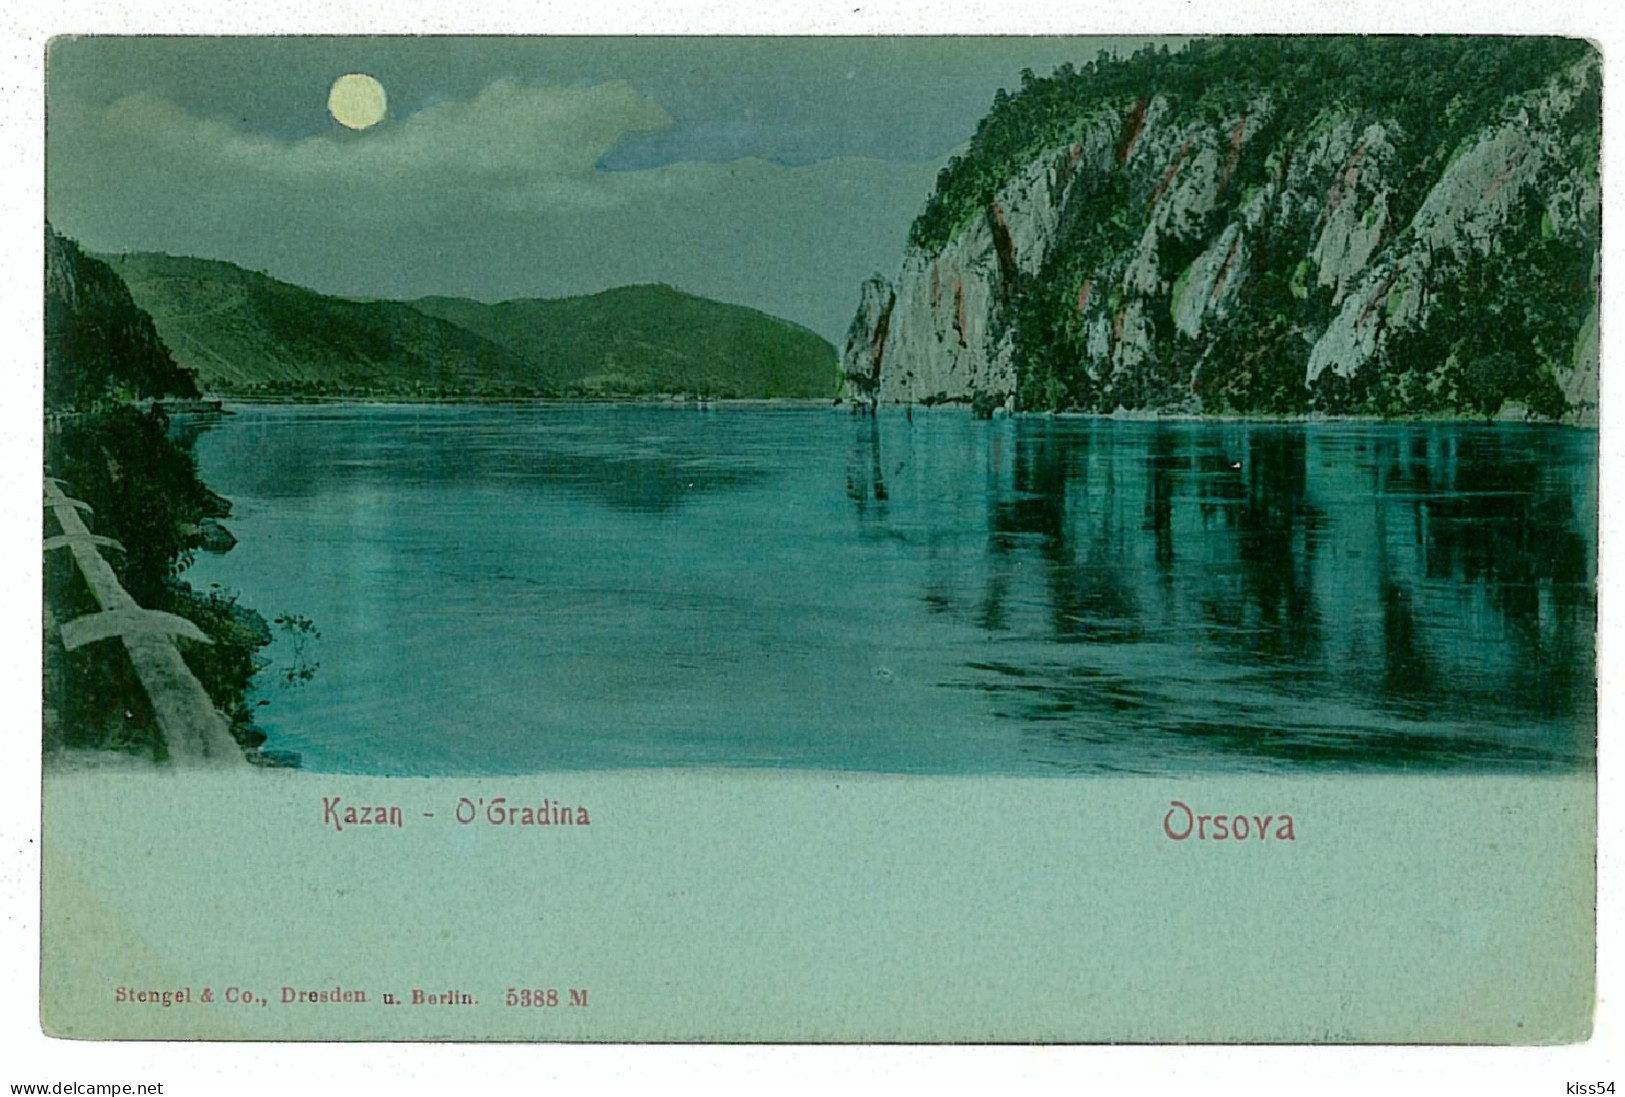 RO 81 - 6295 ORSOVA, Danube Kazan, Litho, Romania - Old Postcard - Unused - Roumanie